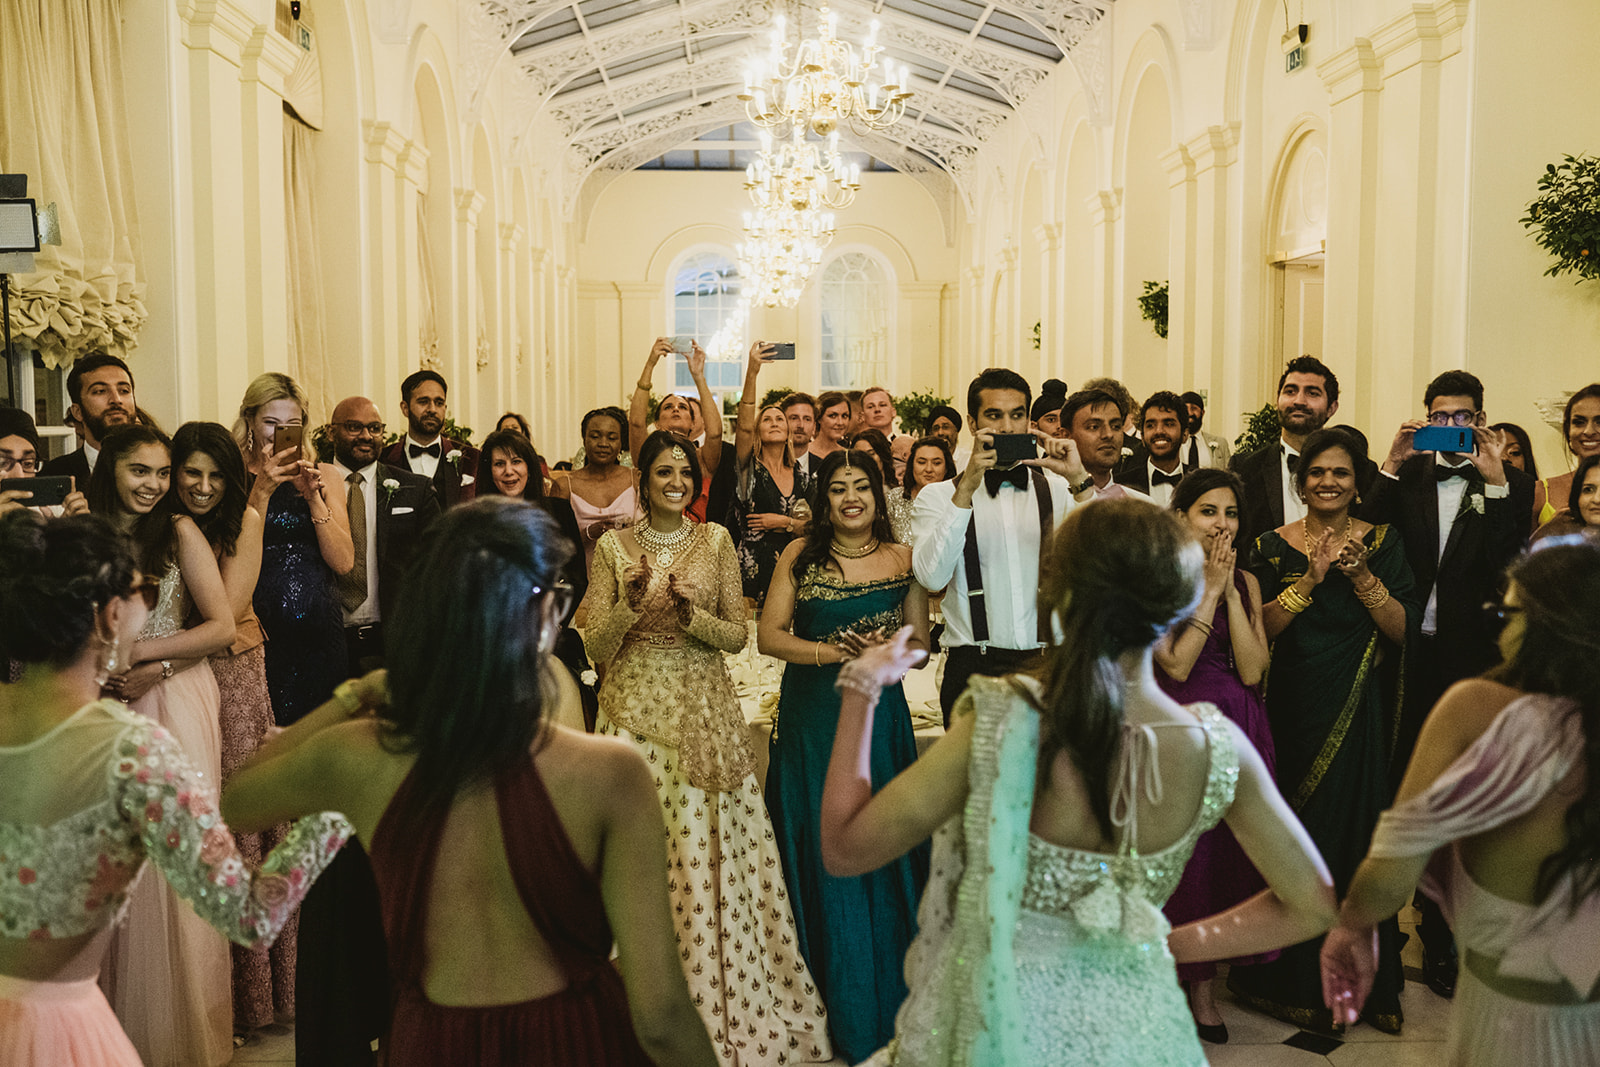 amazing authentic UK hindu and civil wedding photographers images by London wedding photographers York Place Studios